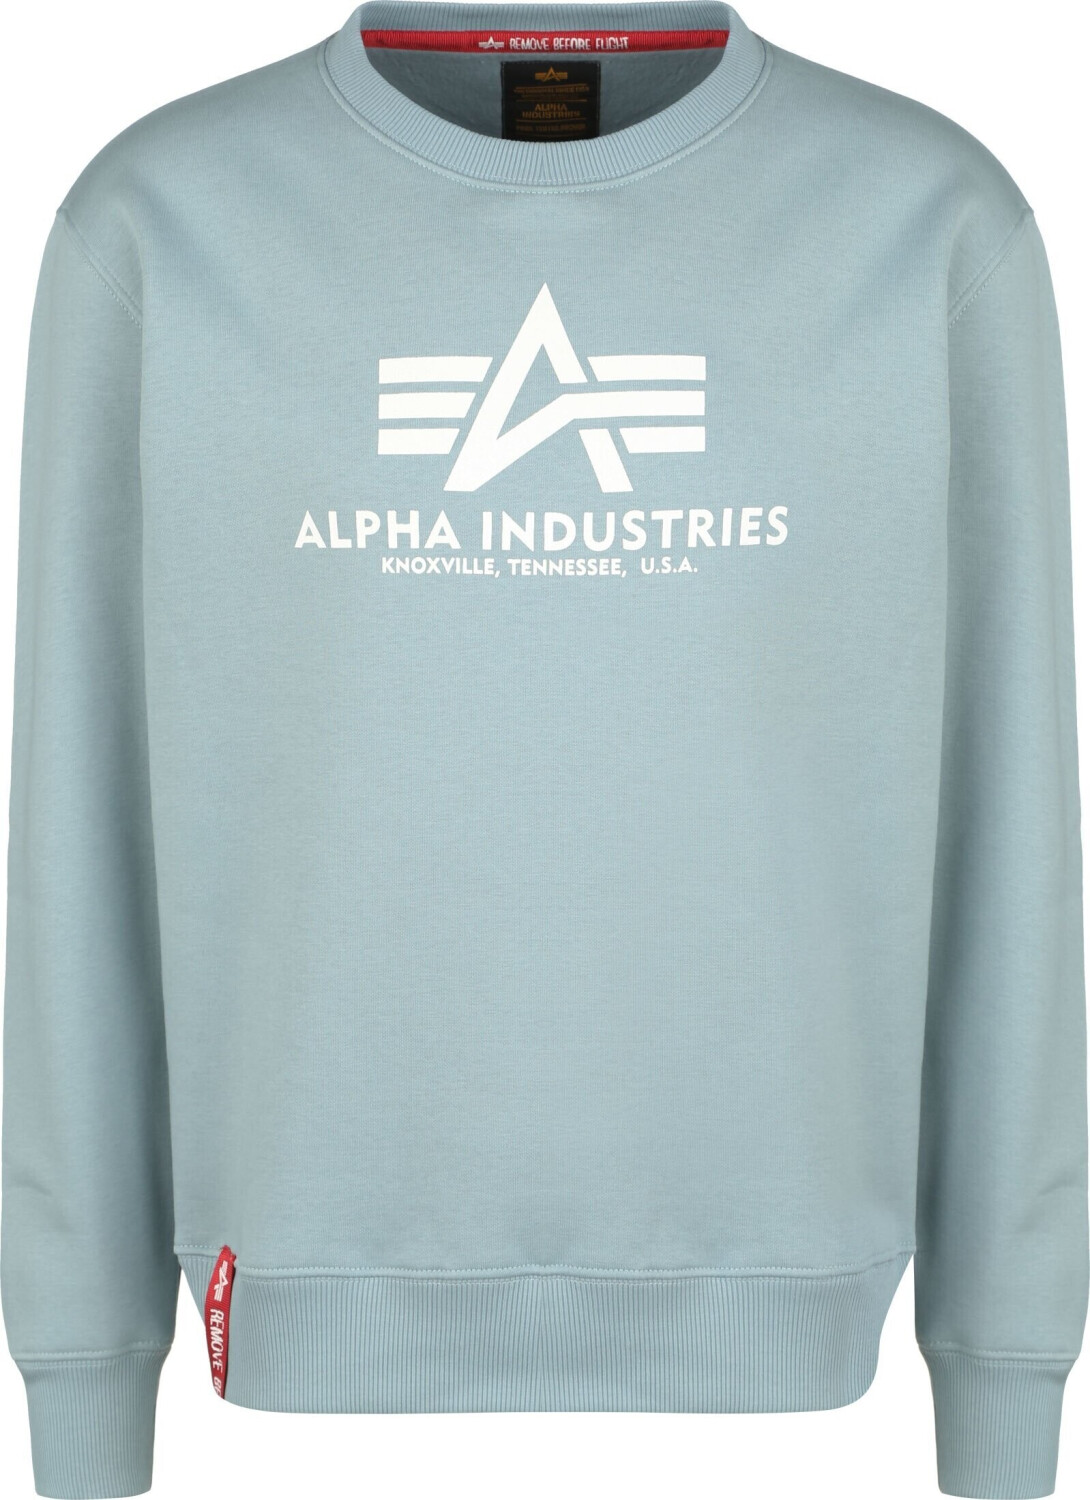 Sweatshirt Alpha | Industries (178302-134) blue 52,90 bei ab Basic Preisvergleich €